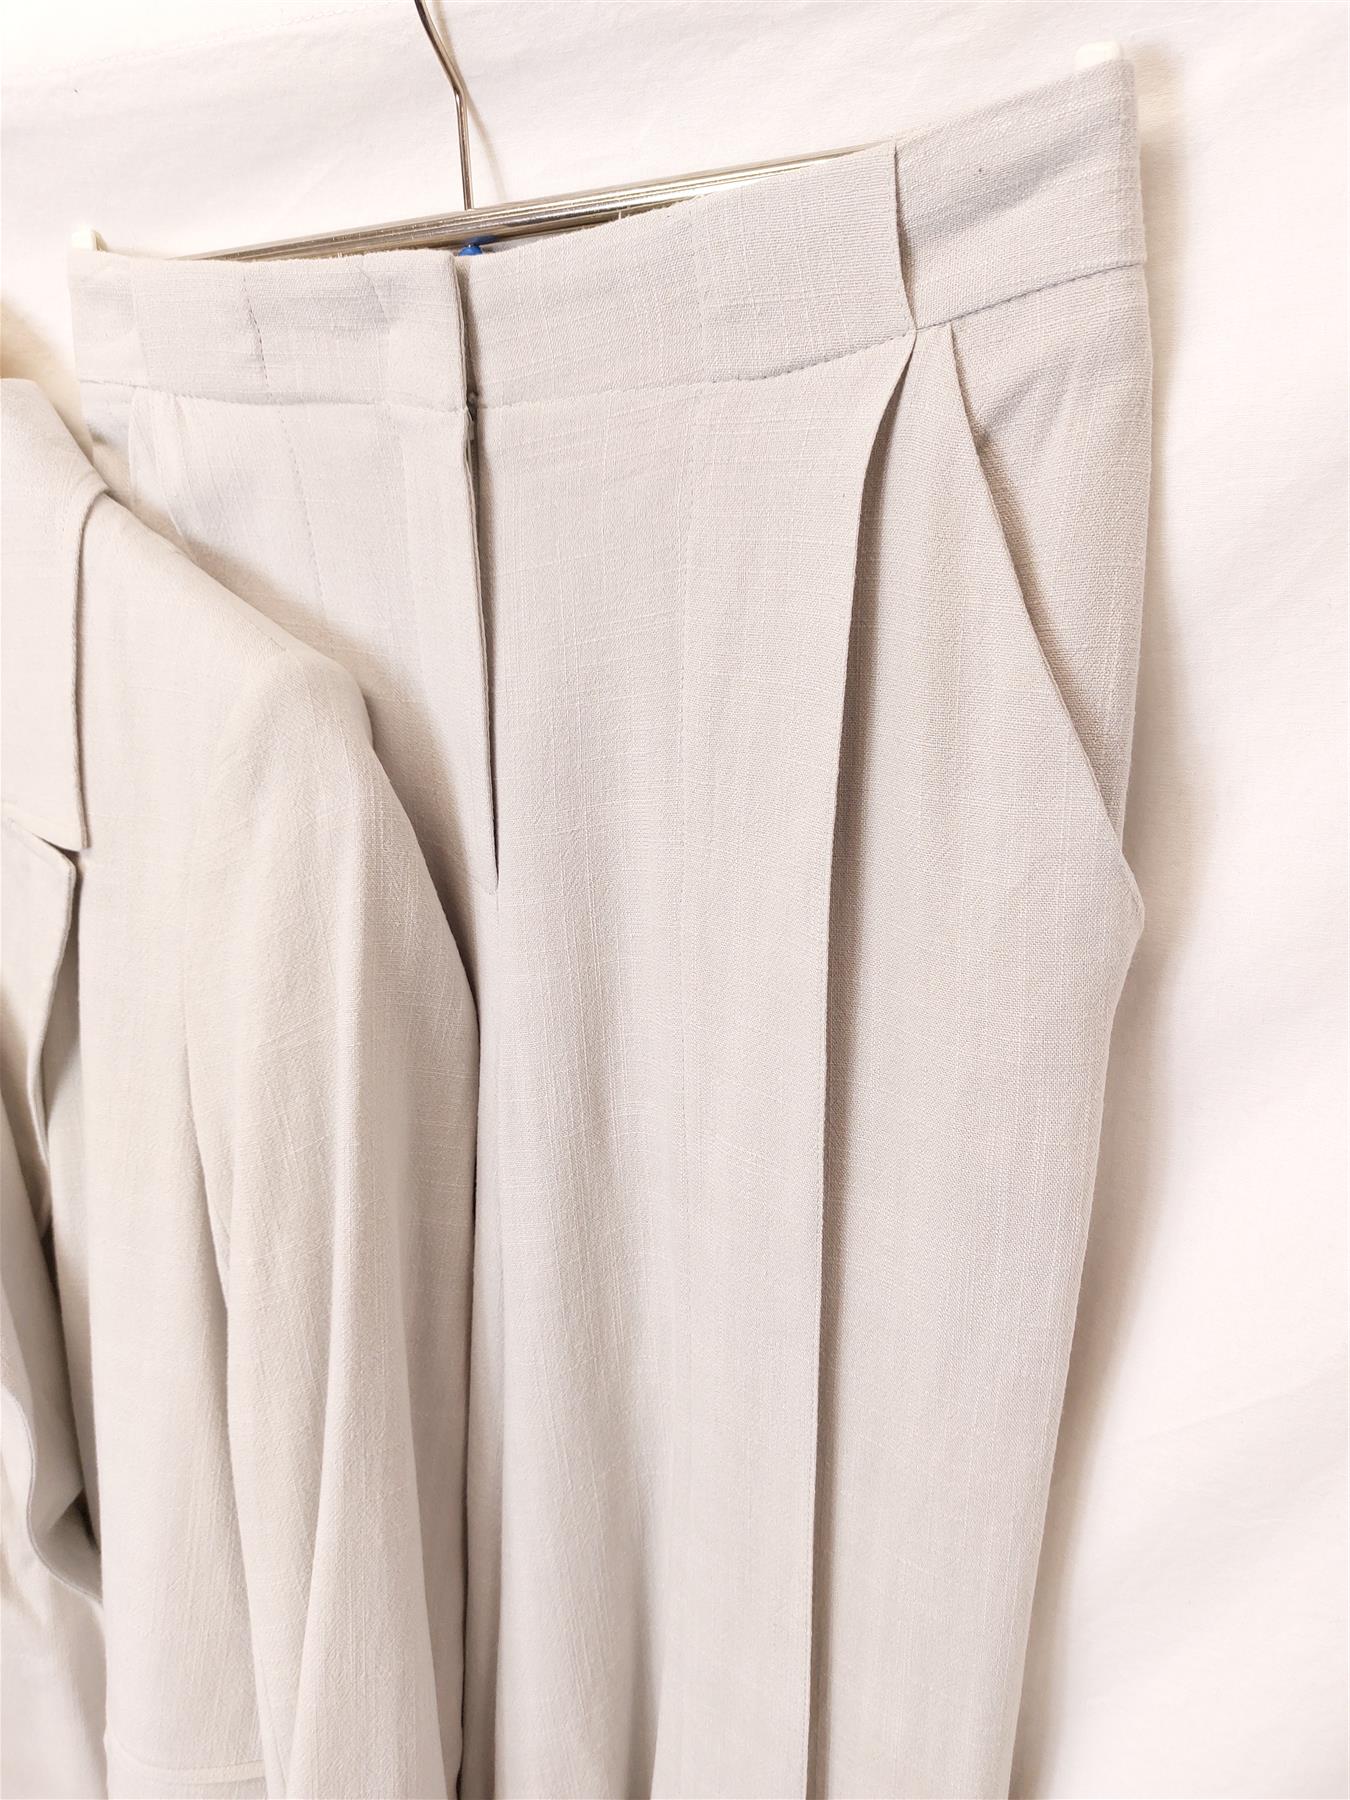 New Women's Trouser Suit Jacket & Pants Smart Office Workwear Grey Sizes 6-10